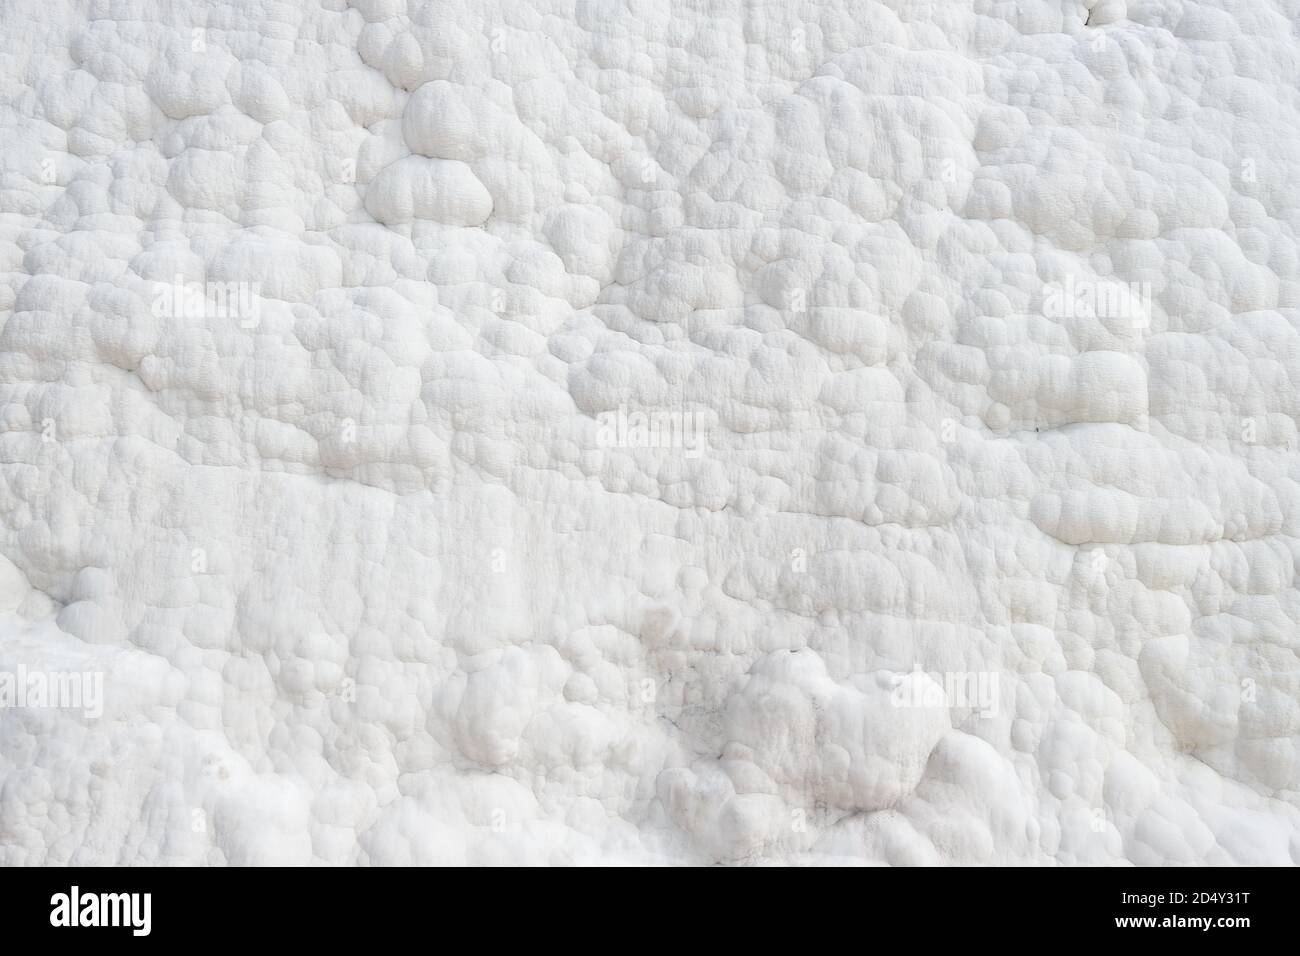 White calcium deposits on the slopes of Pamukkale, Turkey Stock Photo